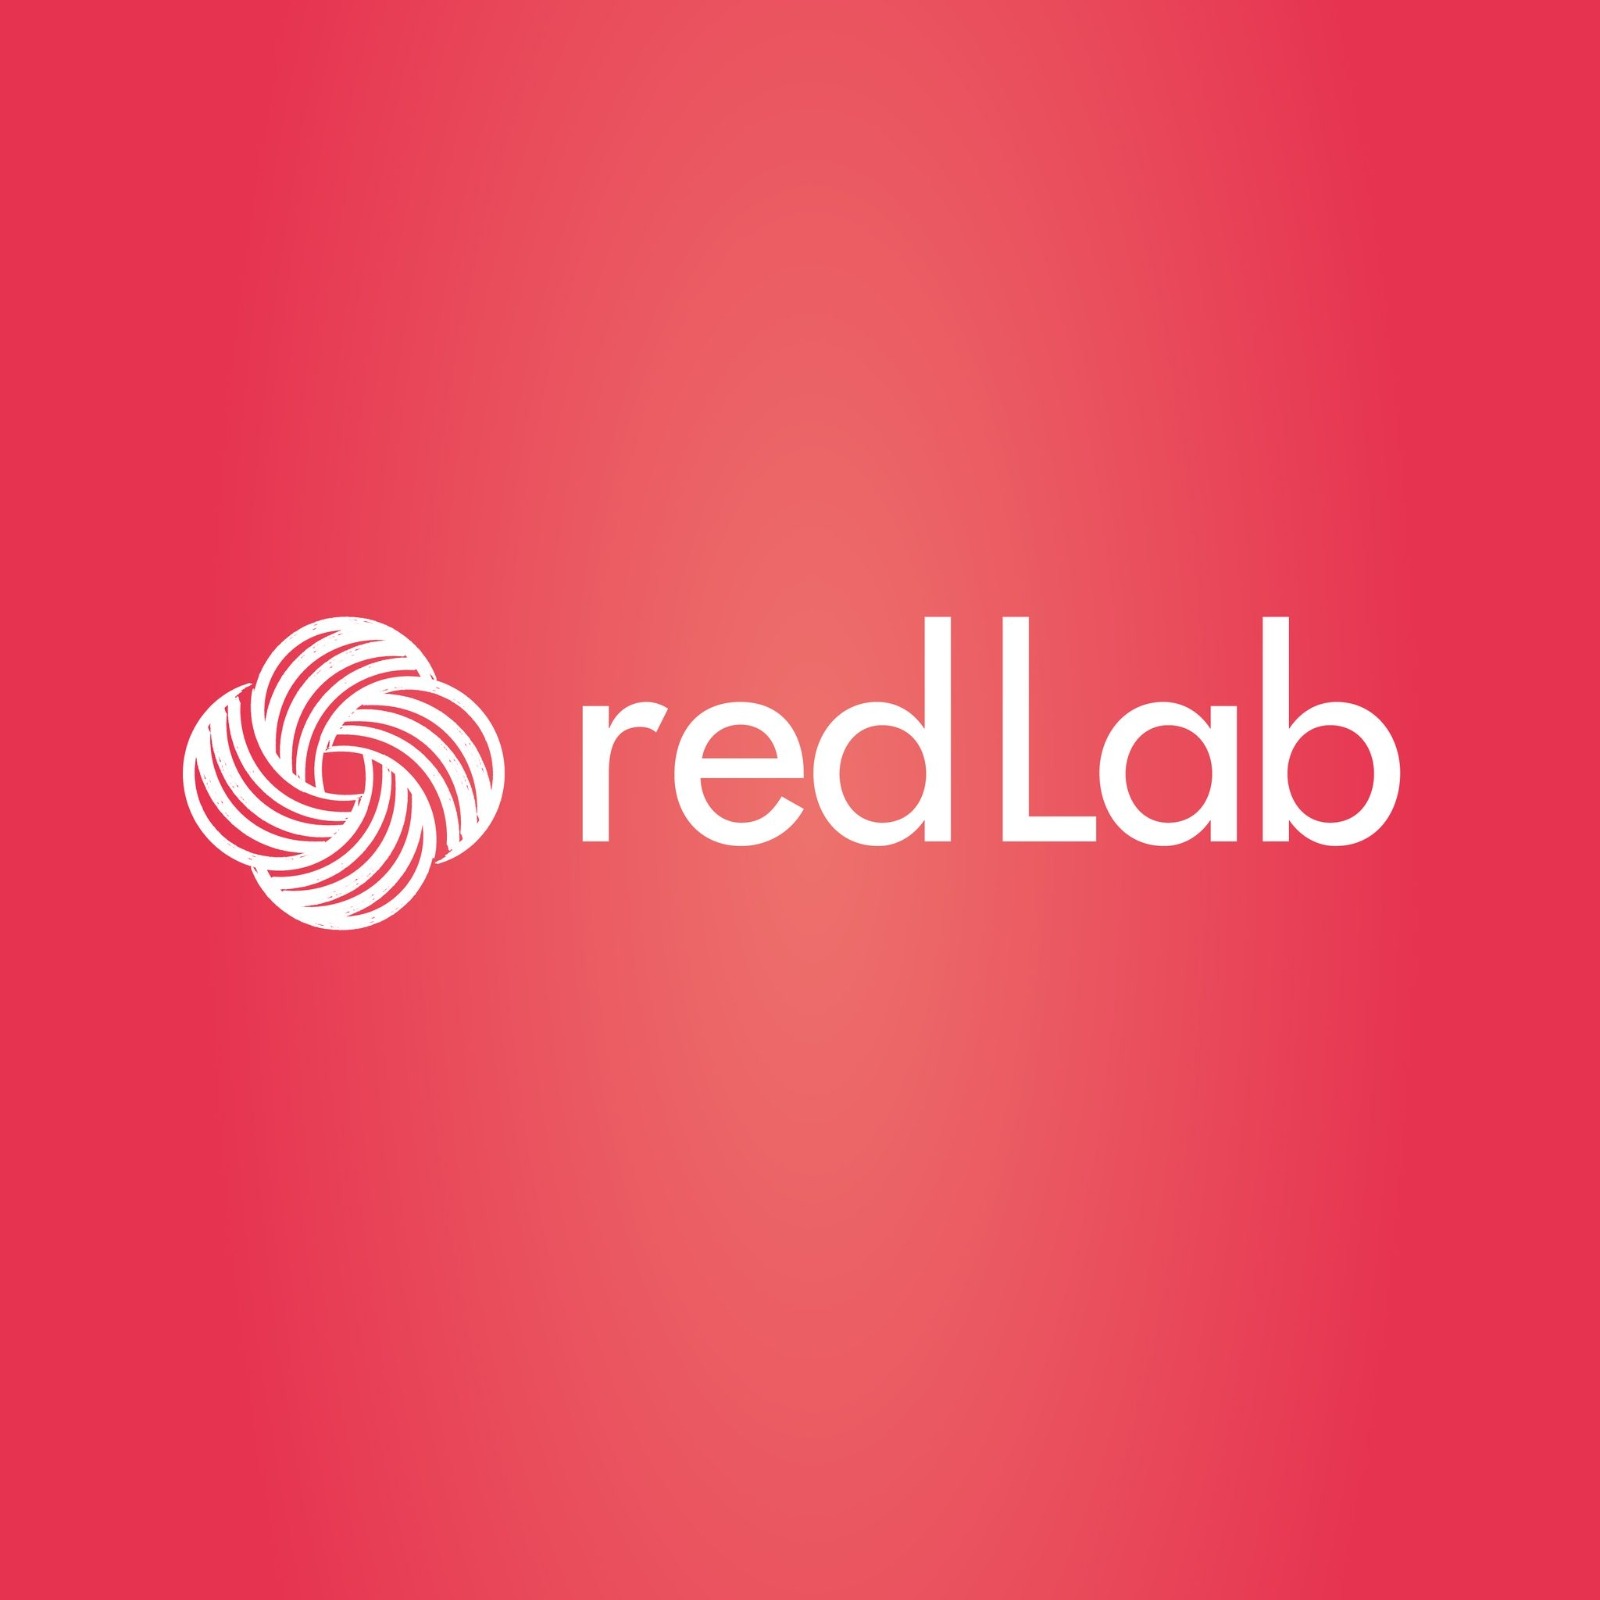 RedLab sigue su crecimiento: renueva su identidad